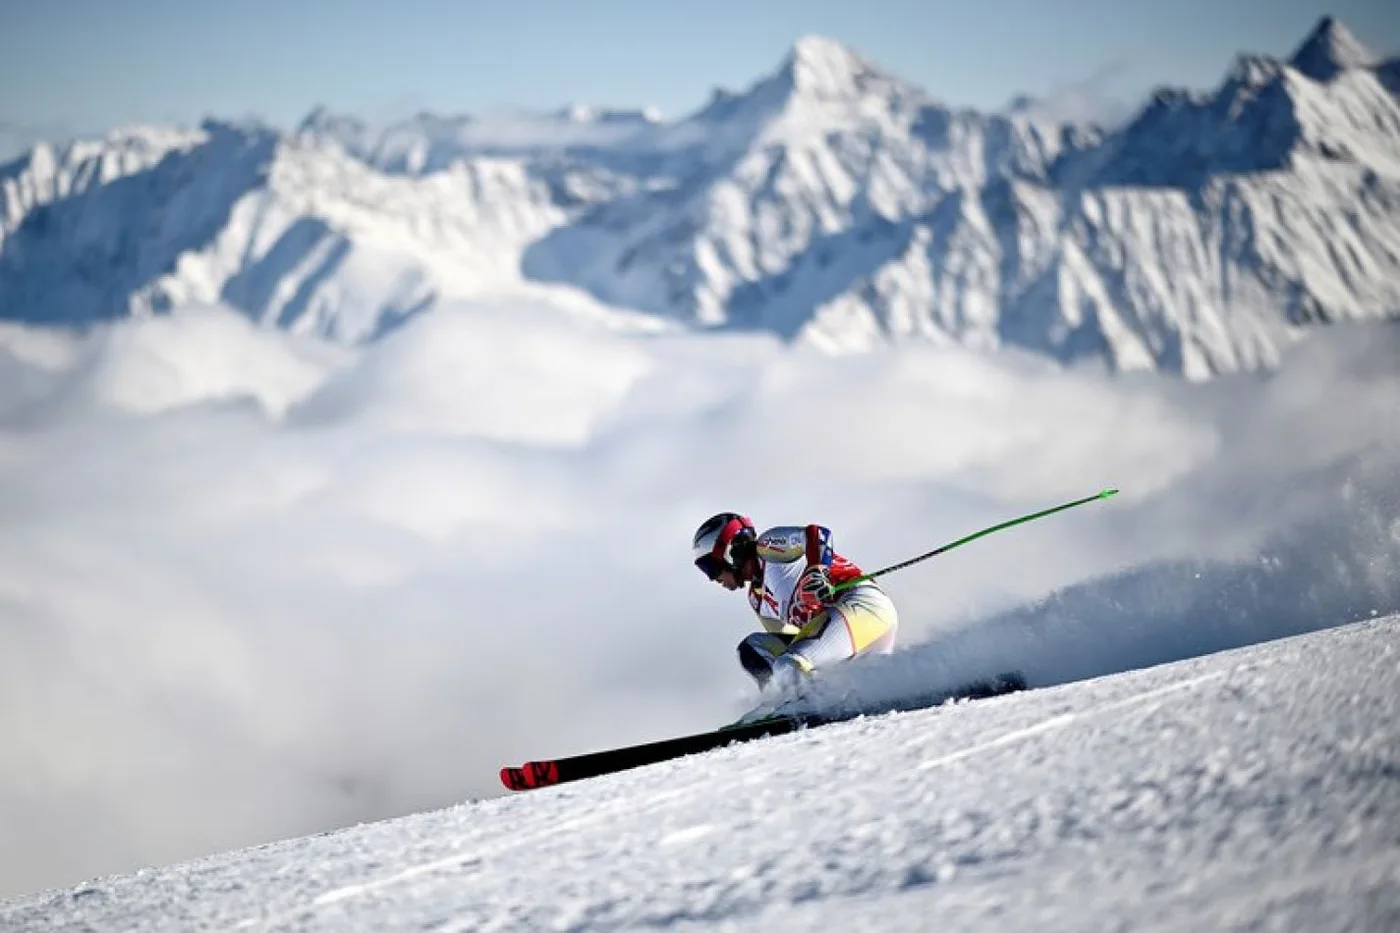 La selección de Austria entrena en Tierra del Fuego para los Juegos Olímpicos de Invierno, que se harán en Beijing el año que viene.El 2 de agosto par